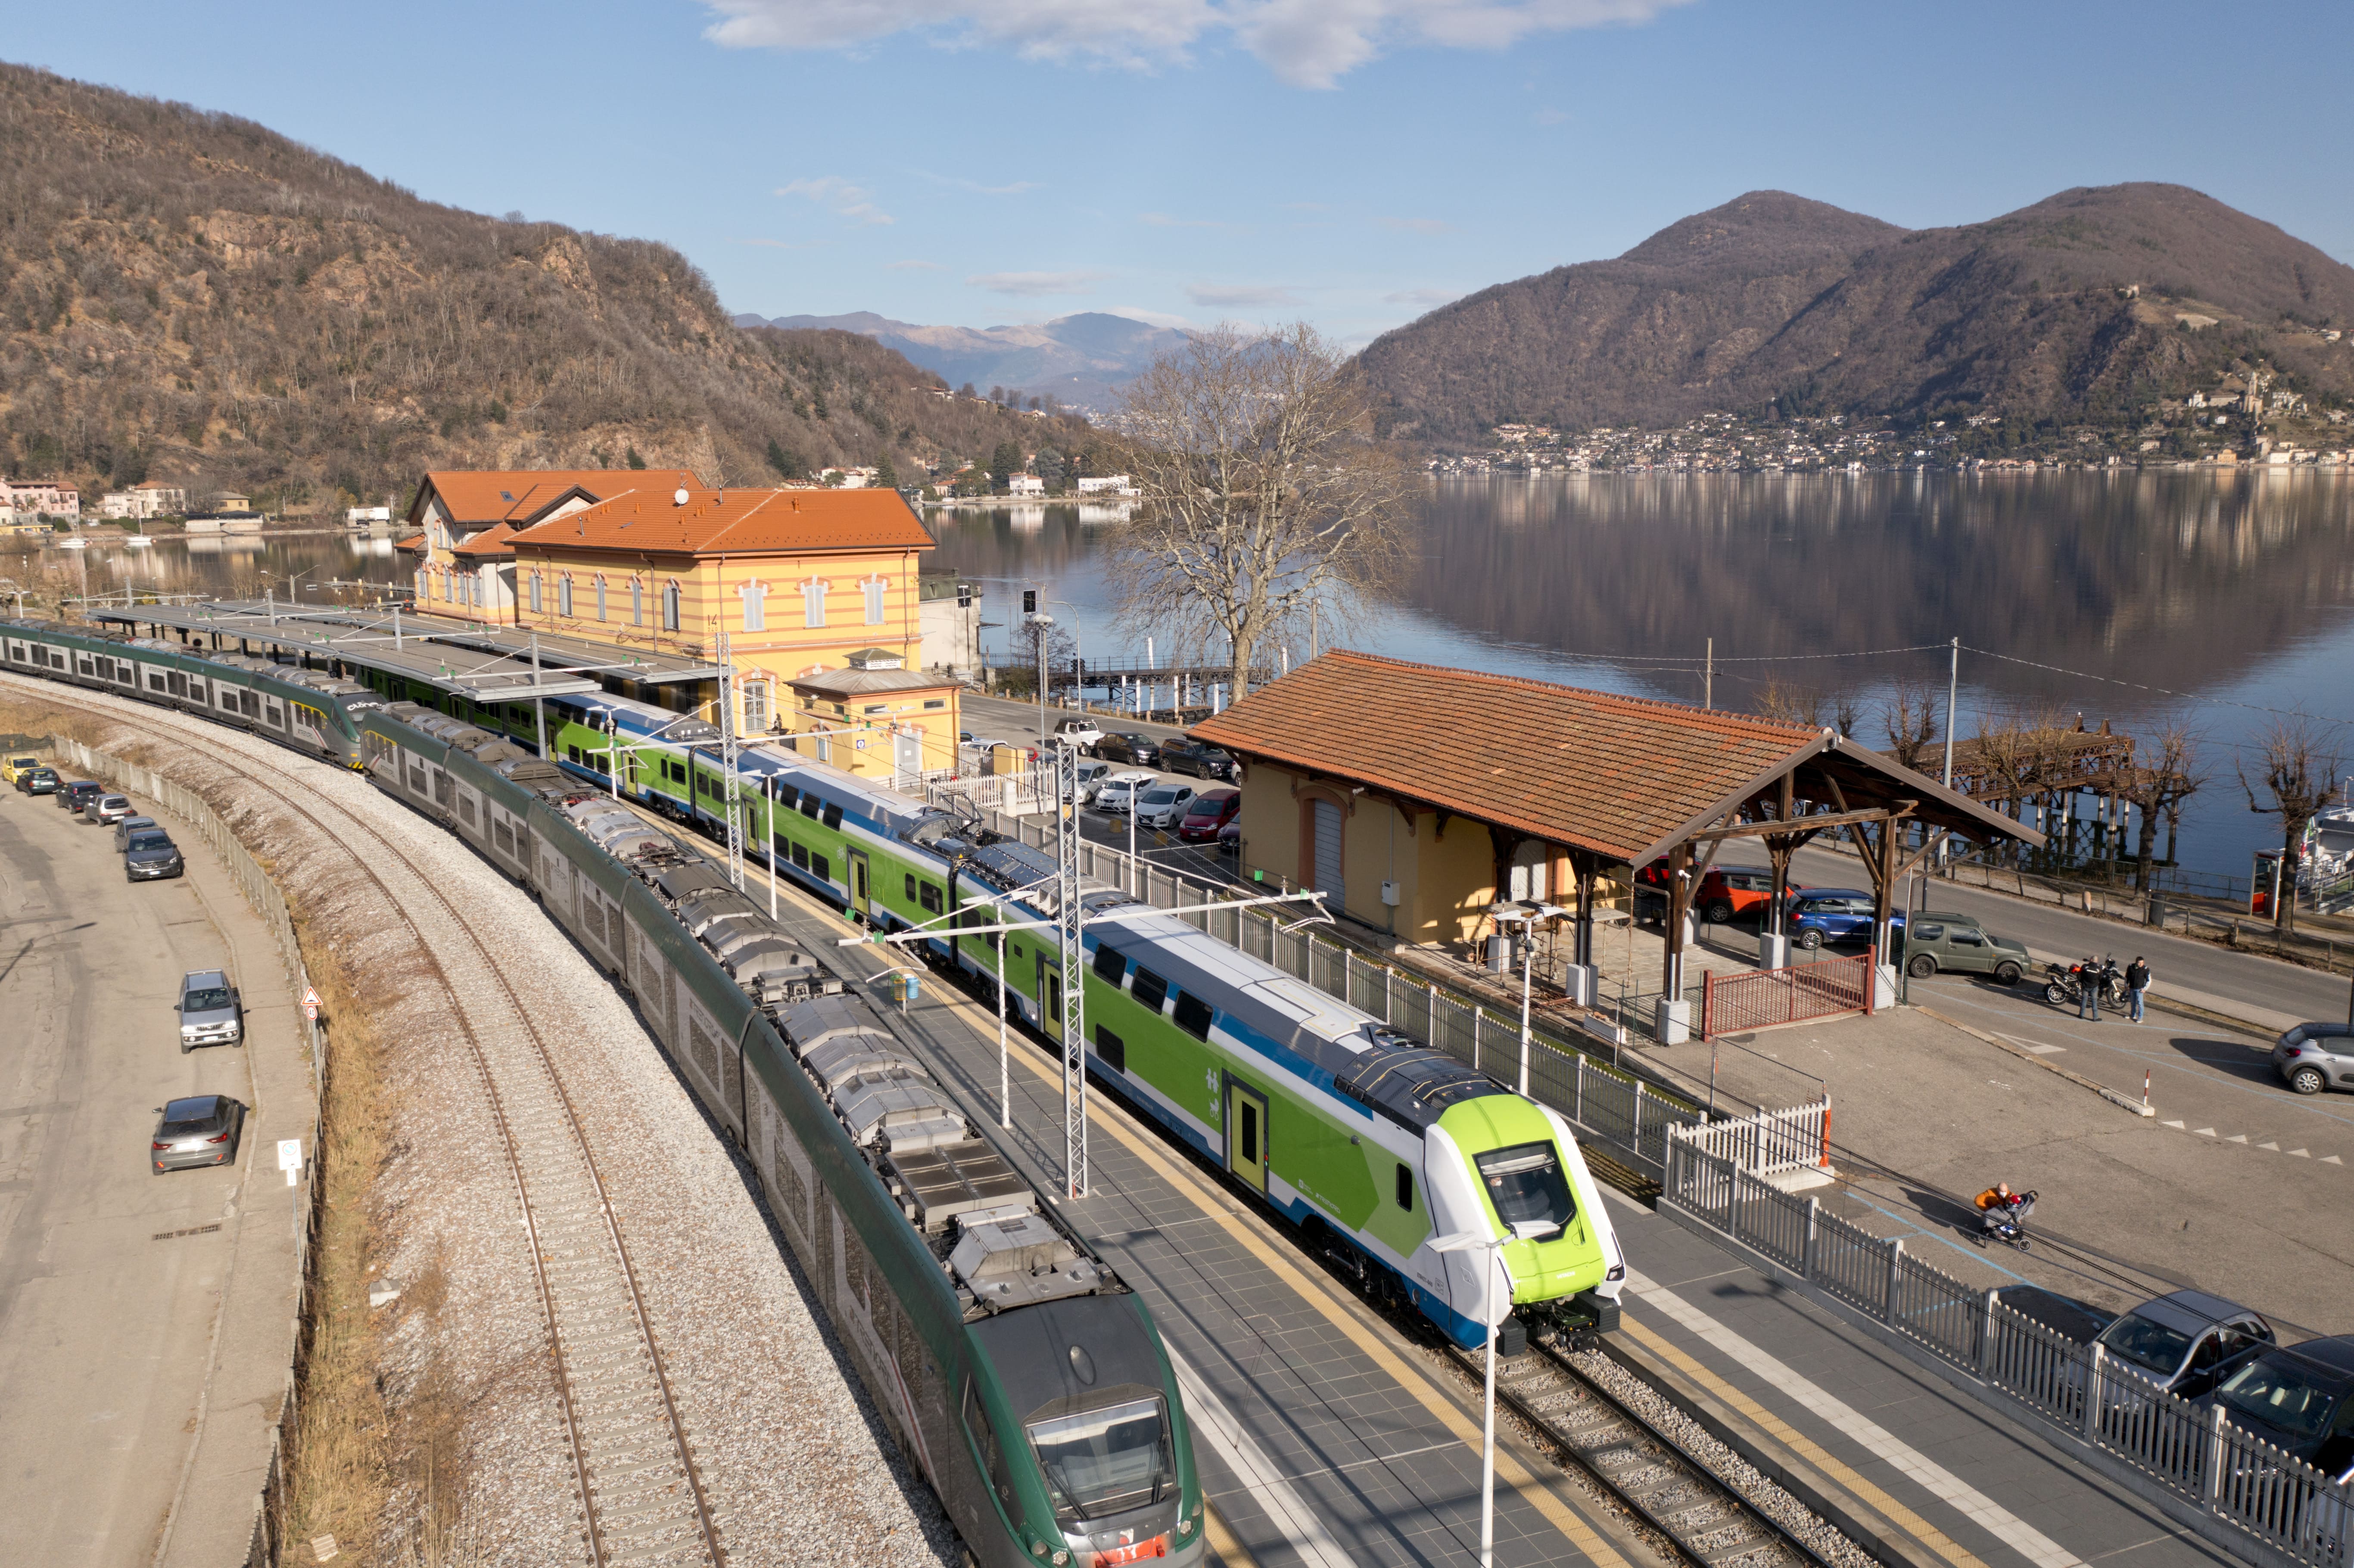 Trenord a BIT: tornano le “Gite in Treno”, itinerari e idee per turismo di prossimità in Lombardia